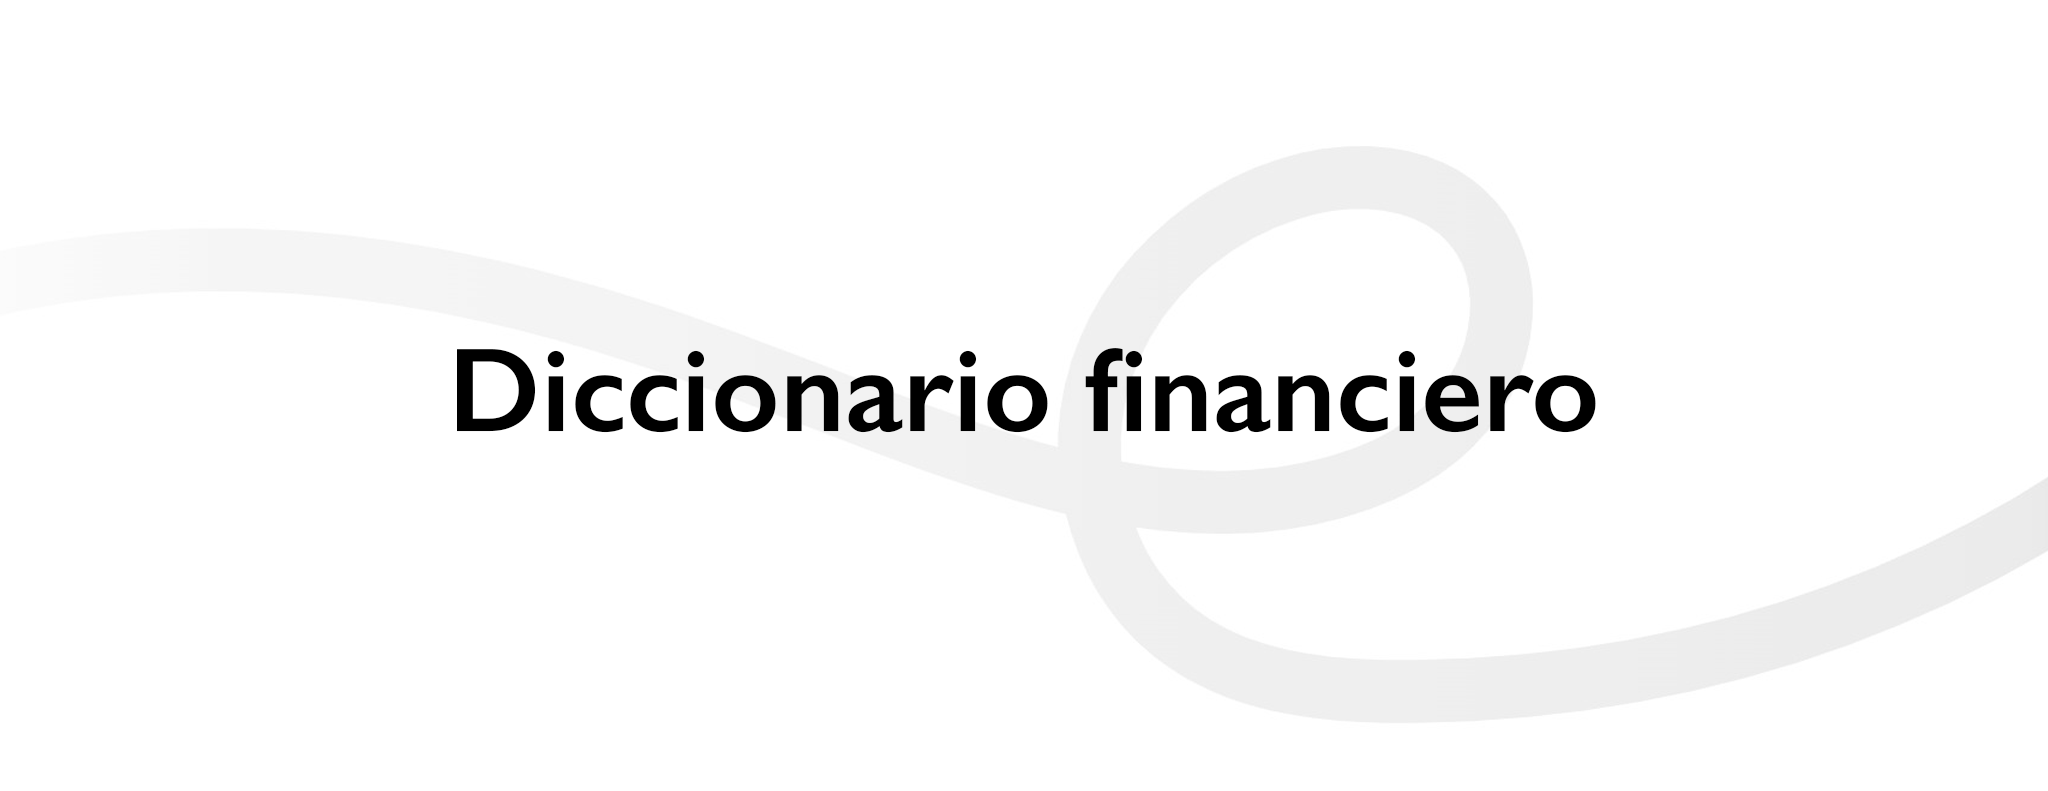 Diccionario financiero Konfío